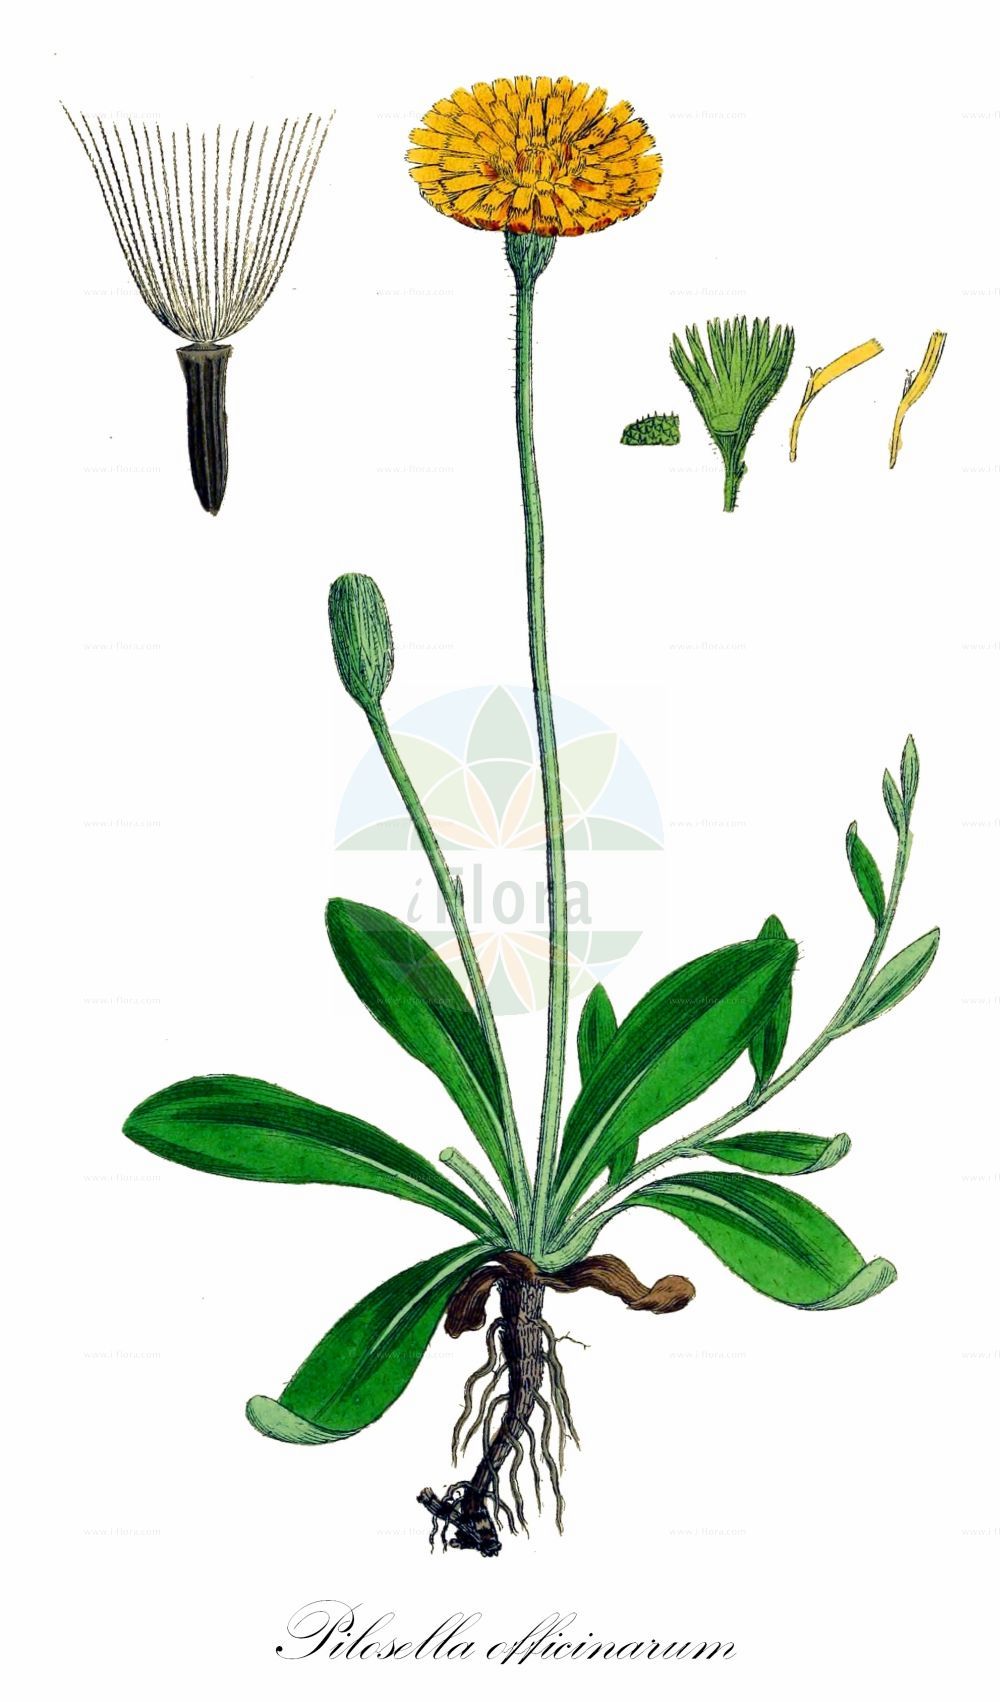 Historische Abbildung von Pilosella officinarum (Kleines Habichtskraut - Mouse-ear-Hawkweed). Das Bild zeigt Blatt, Bluete, Frucht und Same. ---- Historical Drawing of Pilosella officinarum (Kleines Habichtskraut - Mouse-ear-Hawkweed). The image is showing leaf, flower, fruit and seed.(Pilosella officinarum,Kleines Habichtskraut,Mouse-ear-Hawkweed,Hieracium albofloccosum,Hieracium kemulariae,Hieracium obscurisquamum,Hieracium paradoxum,Hieracium pilosella,Hieracium tricholepium,Hieracium trichosoma,Pilosella angustella,Pilosella melanops,Pilosella micradenophora,Pilosella officinarum,Pilosella tricholepia,Pilosella urnigera,Kleines Habichtskraut,Grosskoepfiges Habichtskraut,Langhaariges Habichtskraut,Mausohr-Habichtskraut,Mouse-ear-Hawkweed,Pilosella,Mausohr-Habichtskräuter,Asteraceae,Korbblütengewächse,Daisy family,Blatt,Bluete,Frucht,Same,leaf,flower,fruit,seed,Sowerby (1790-1813))